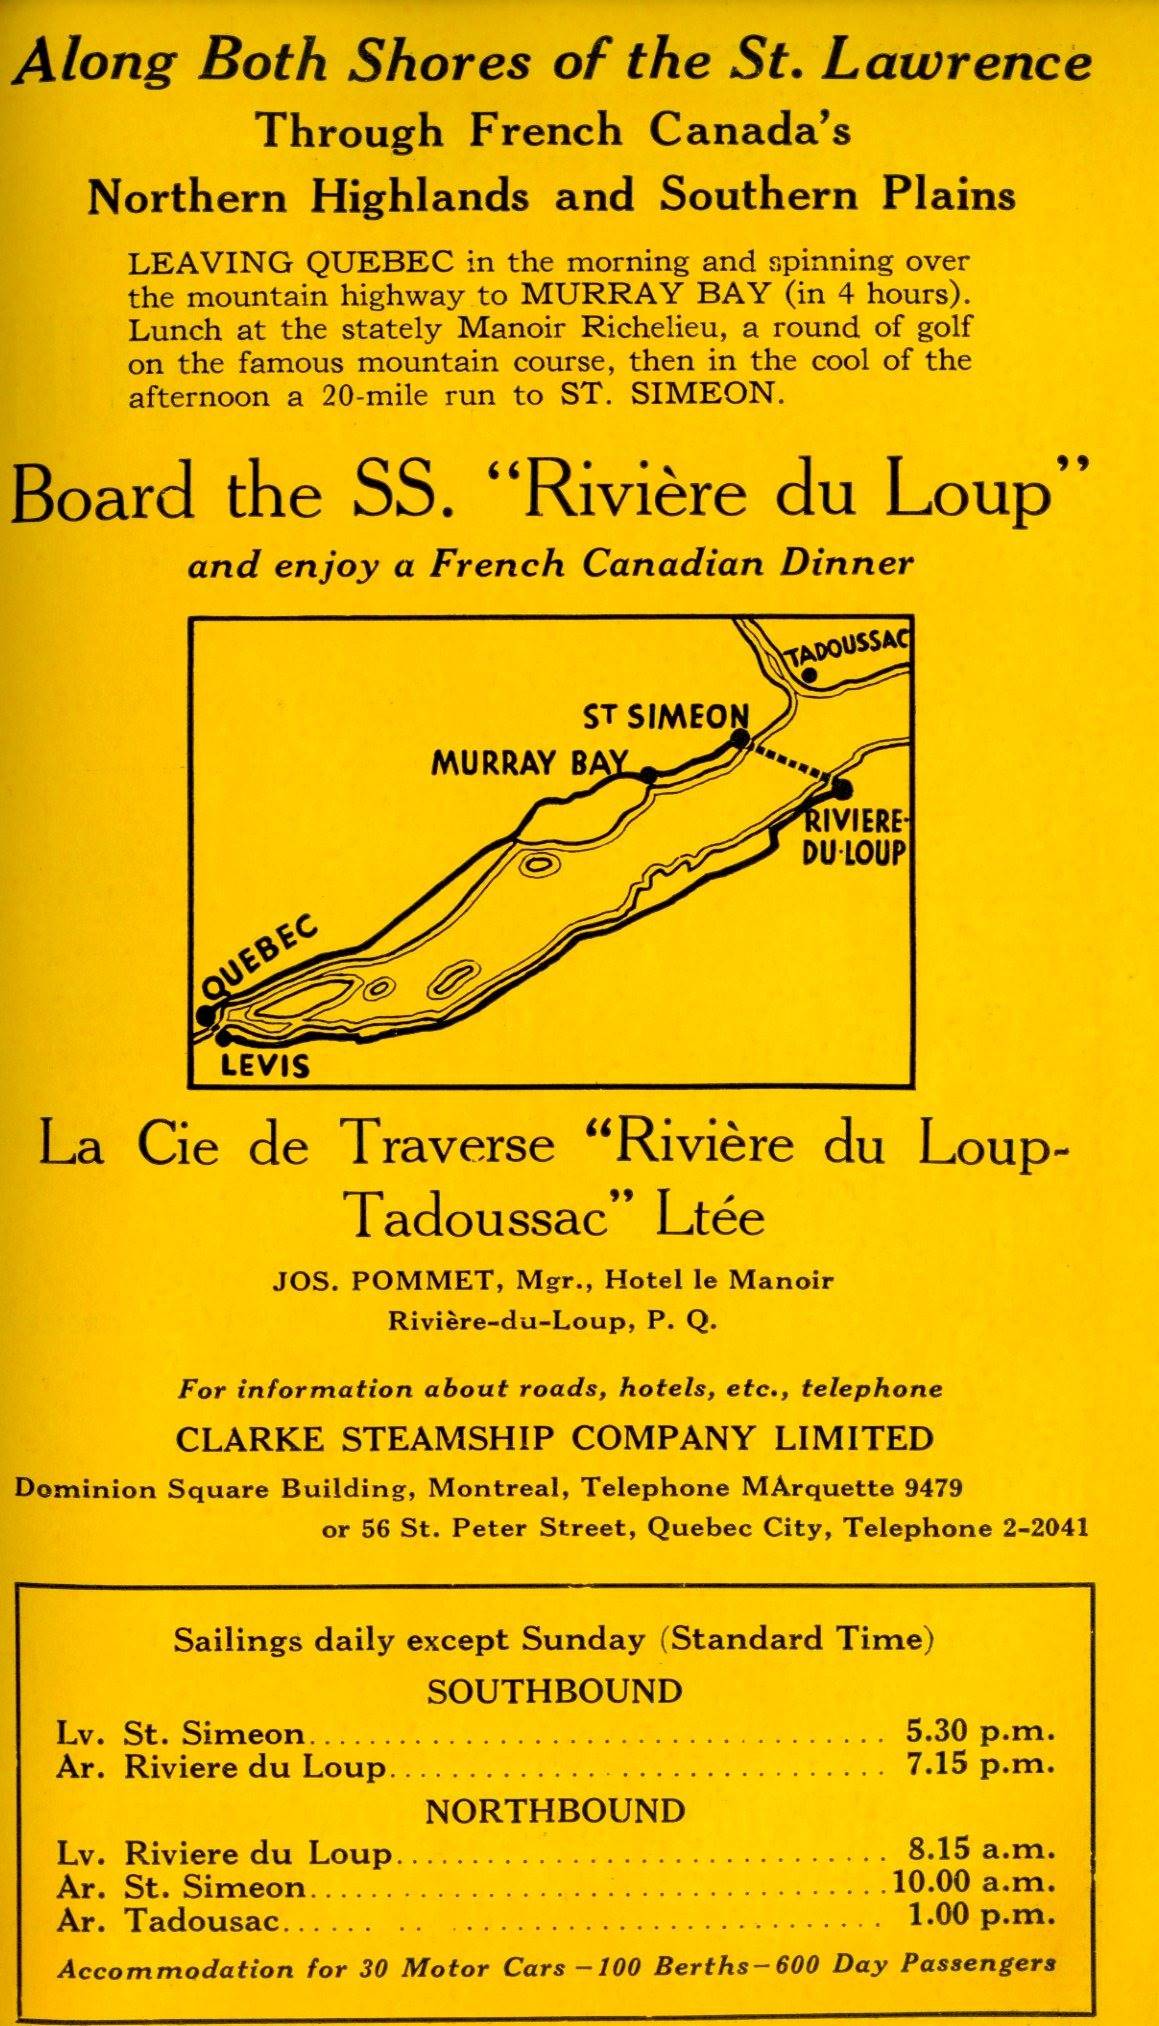 Publicité en anglais d’un service de traversier. Une carte présente une suggestion de trajet de voyage dans l’est du Québec.